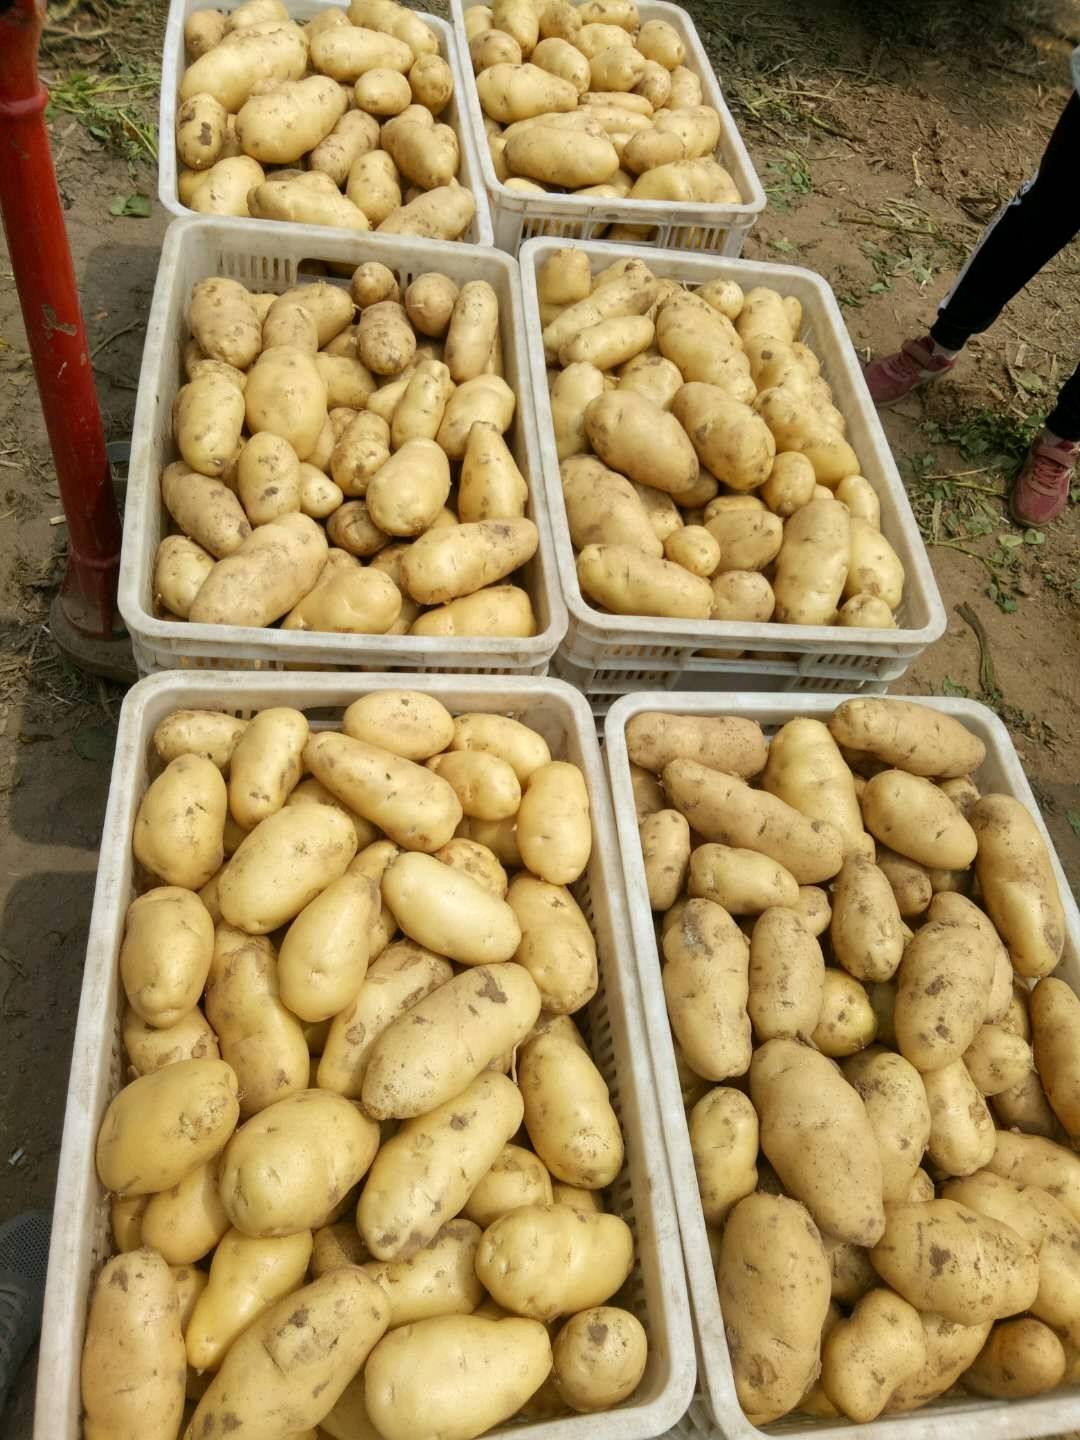 荷兰十五土豆*黄皮黄心*品质保证*代发发全国各地商超市场，包上车。